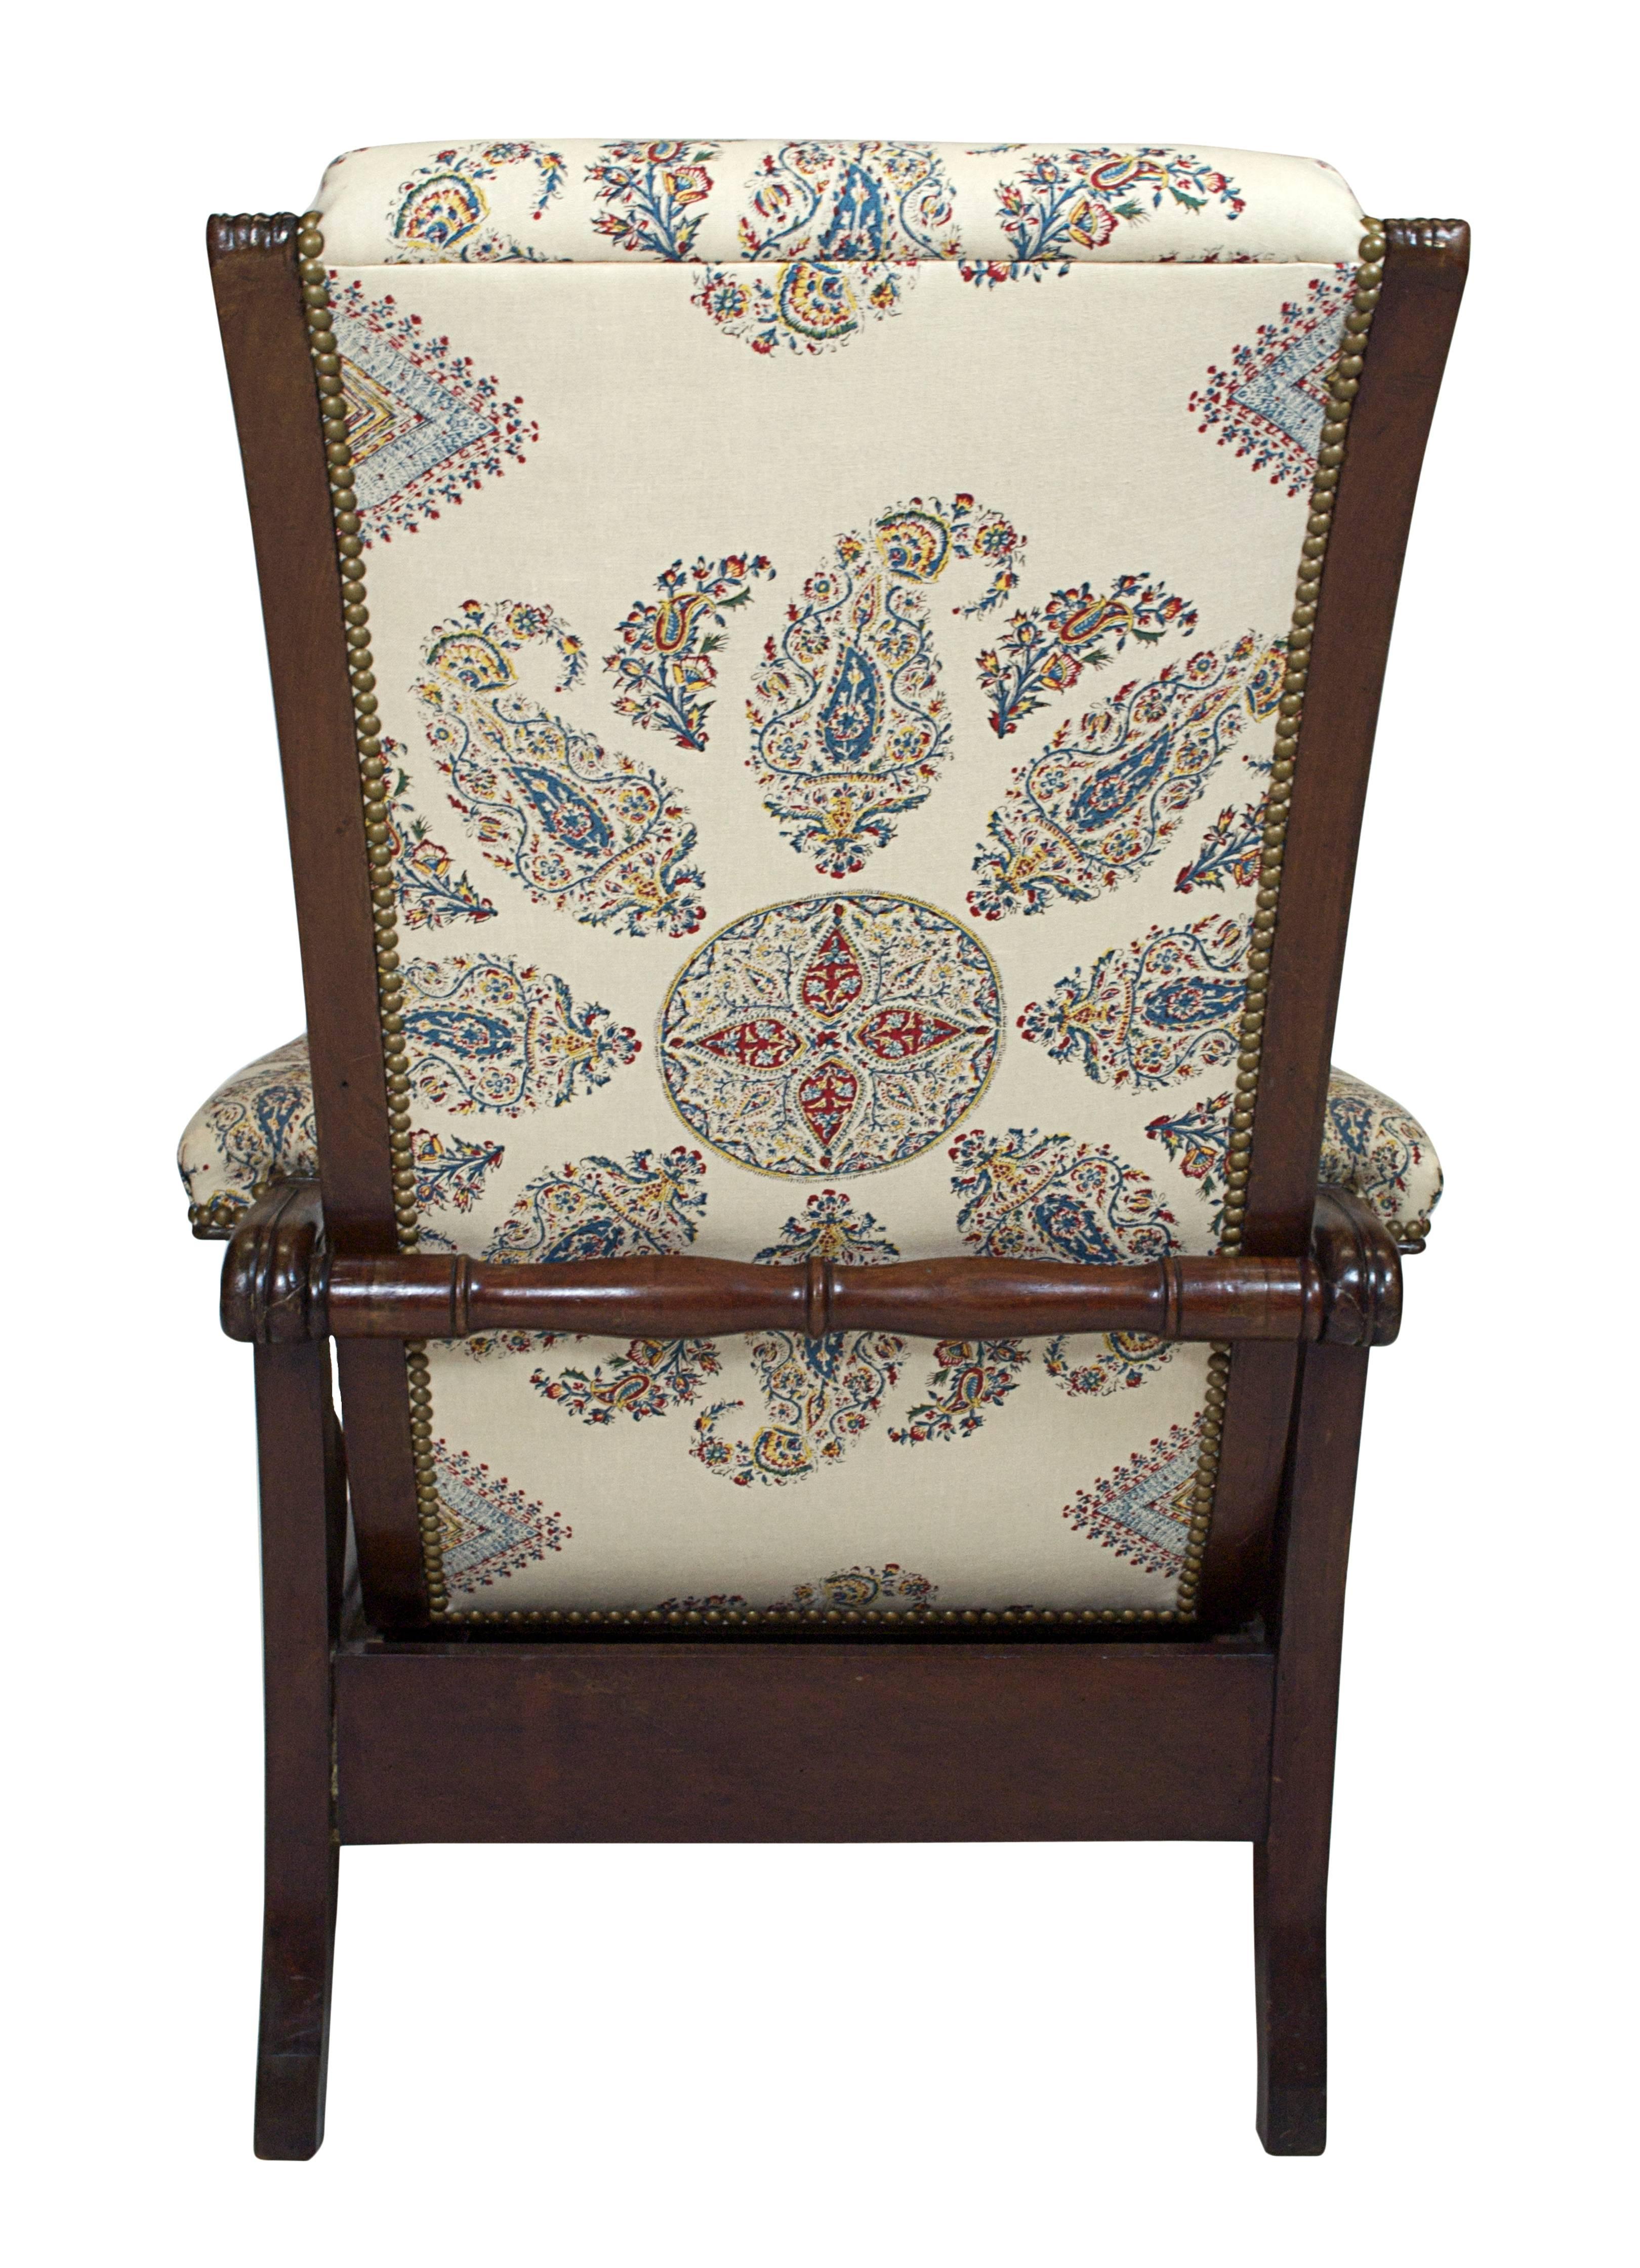 Mahagoni-Sessel im späten Empire-Stil mit handbedrucktem blauen und roten Paisley-Leinen 1